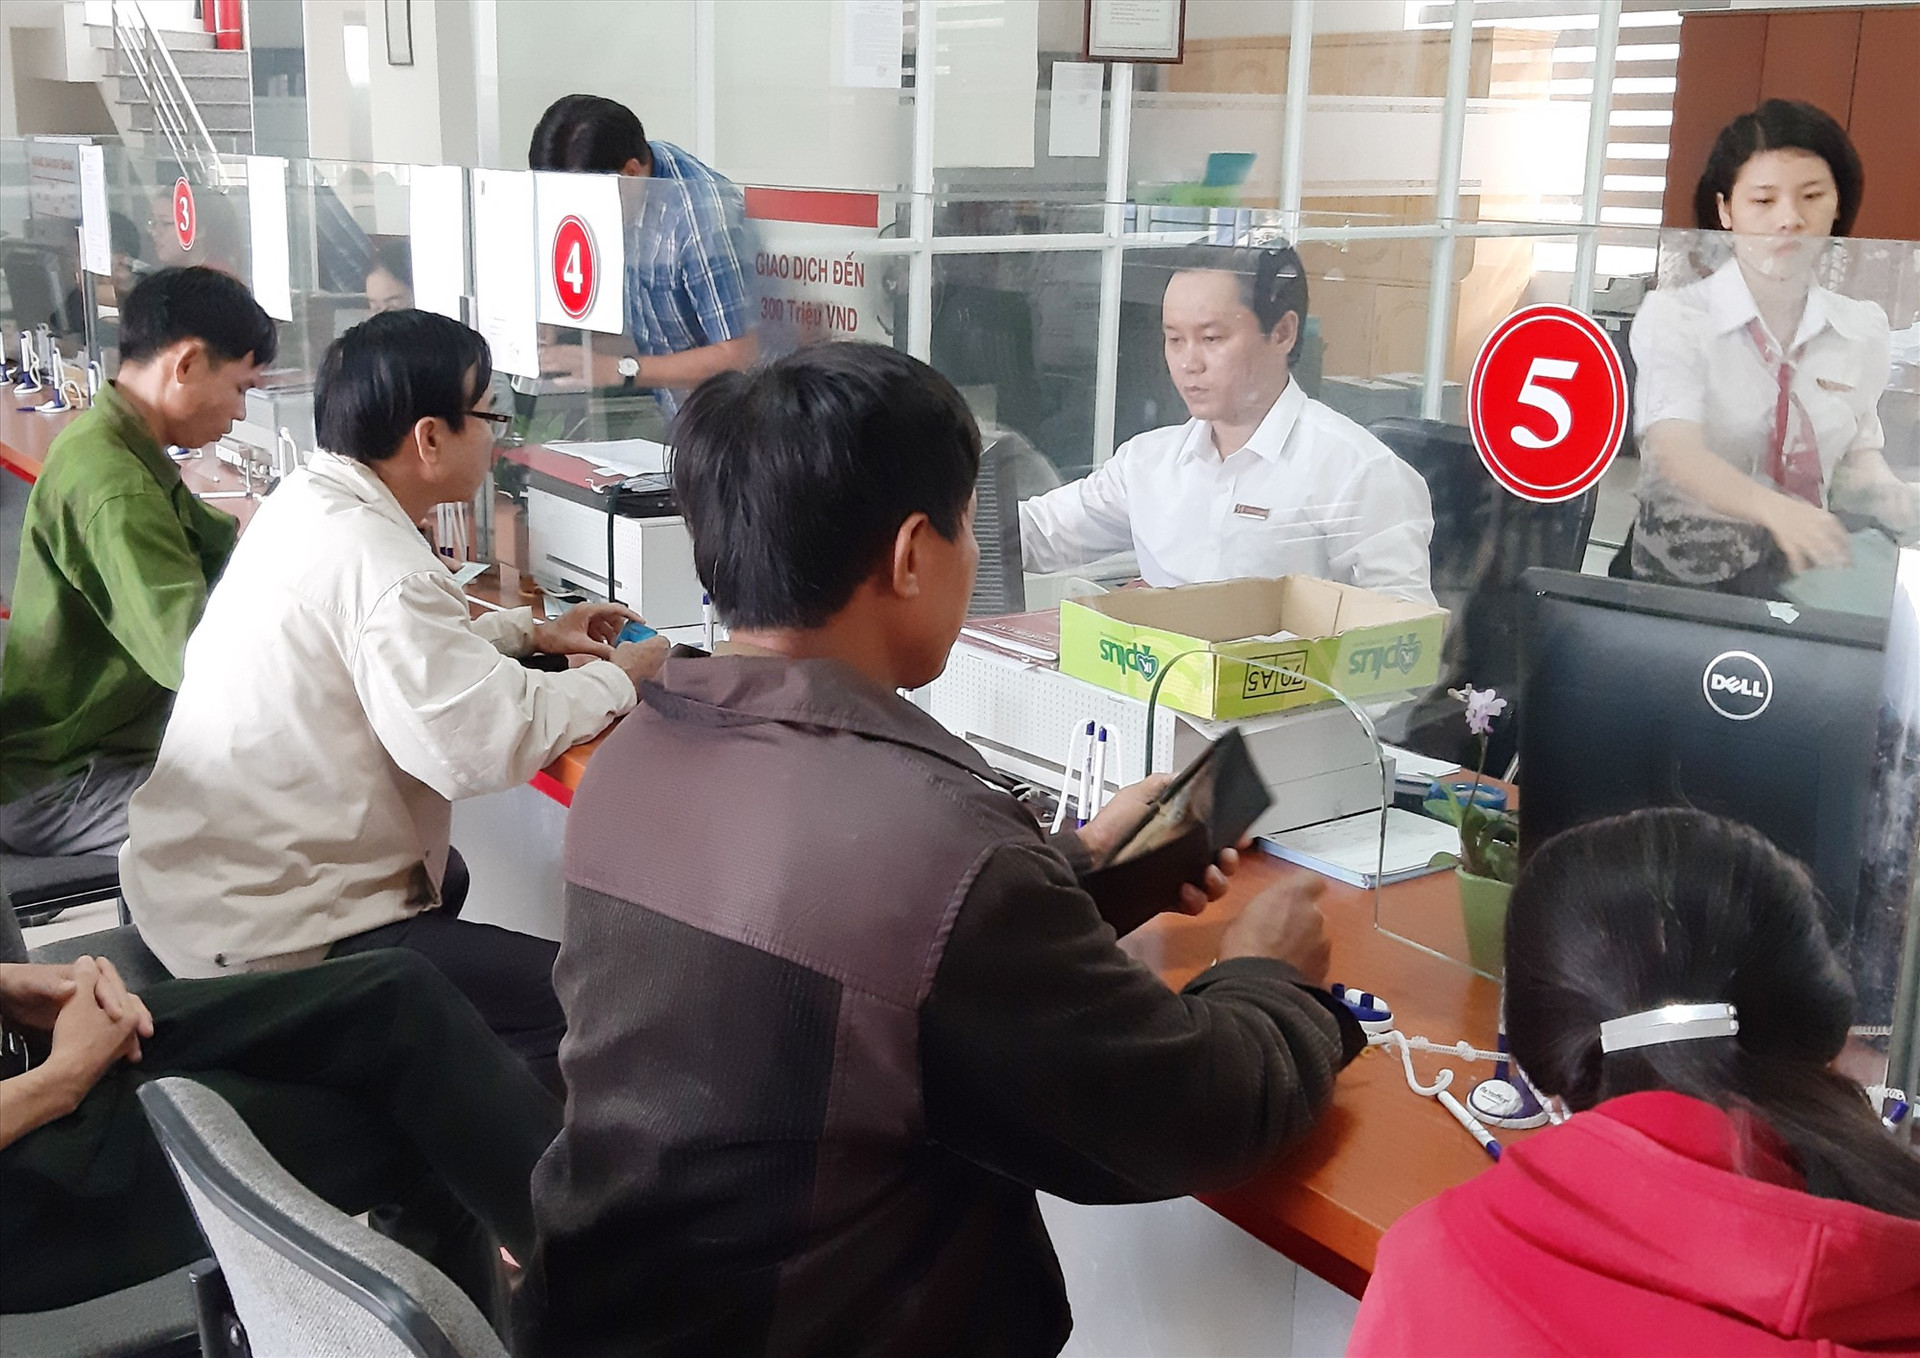 Agribank chi nhánh huyện Tiên Phước đang rà soát, nắm bắt tình hình sản xuất kinh doanh để hỗ trợ doanh nghiệp, người dân bị ảnh hưởng bởi dịch nCoV. Ảnh: VIỆT NGUYỄN